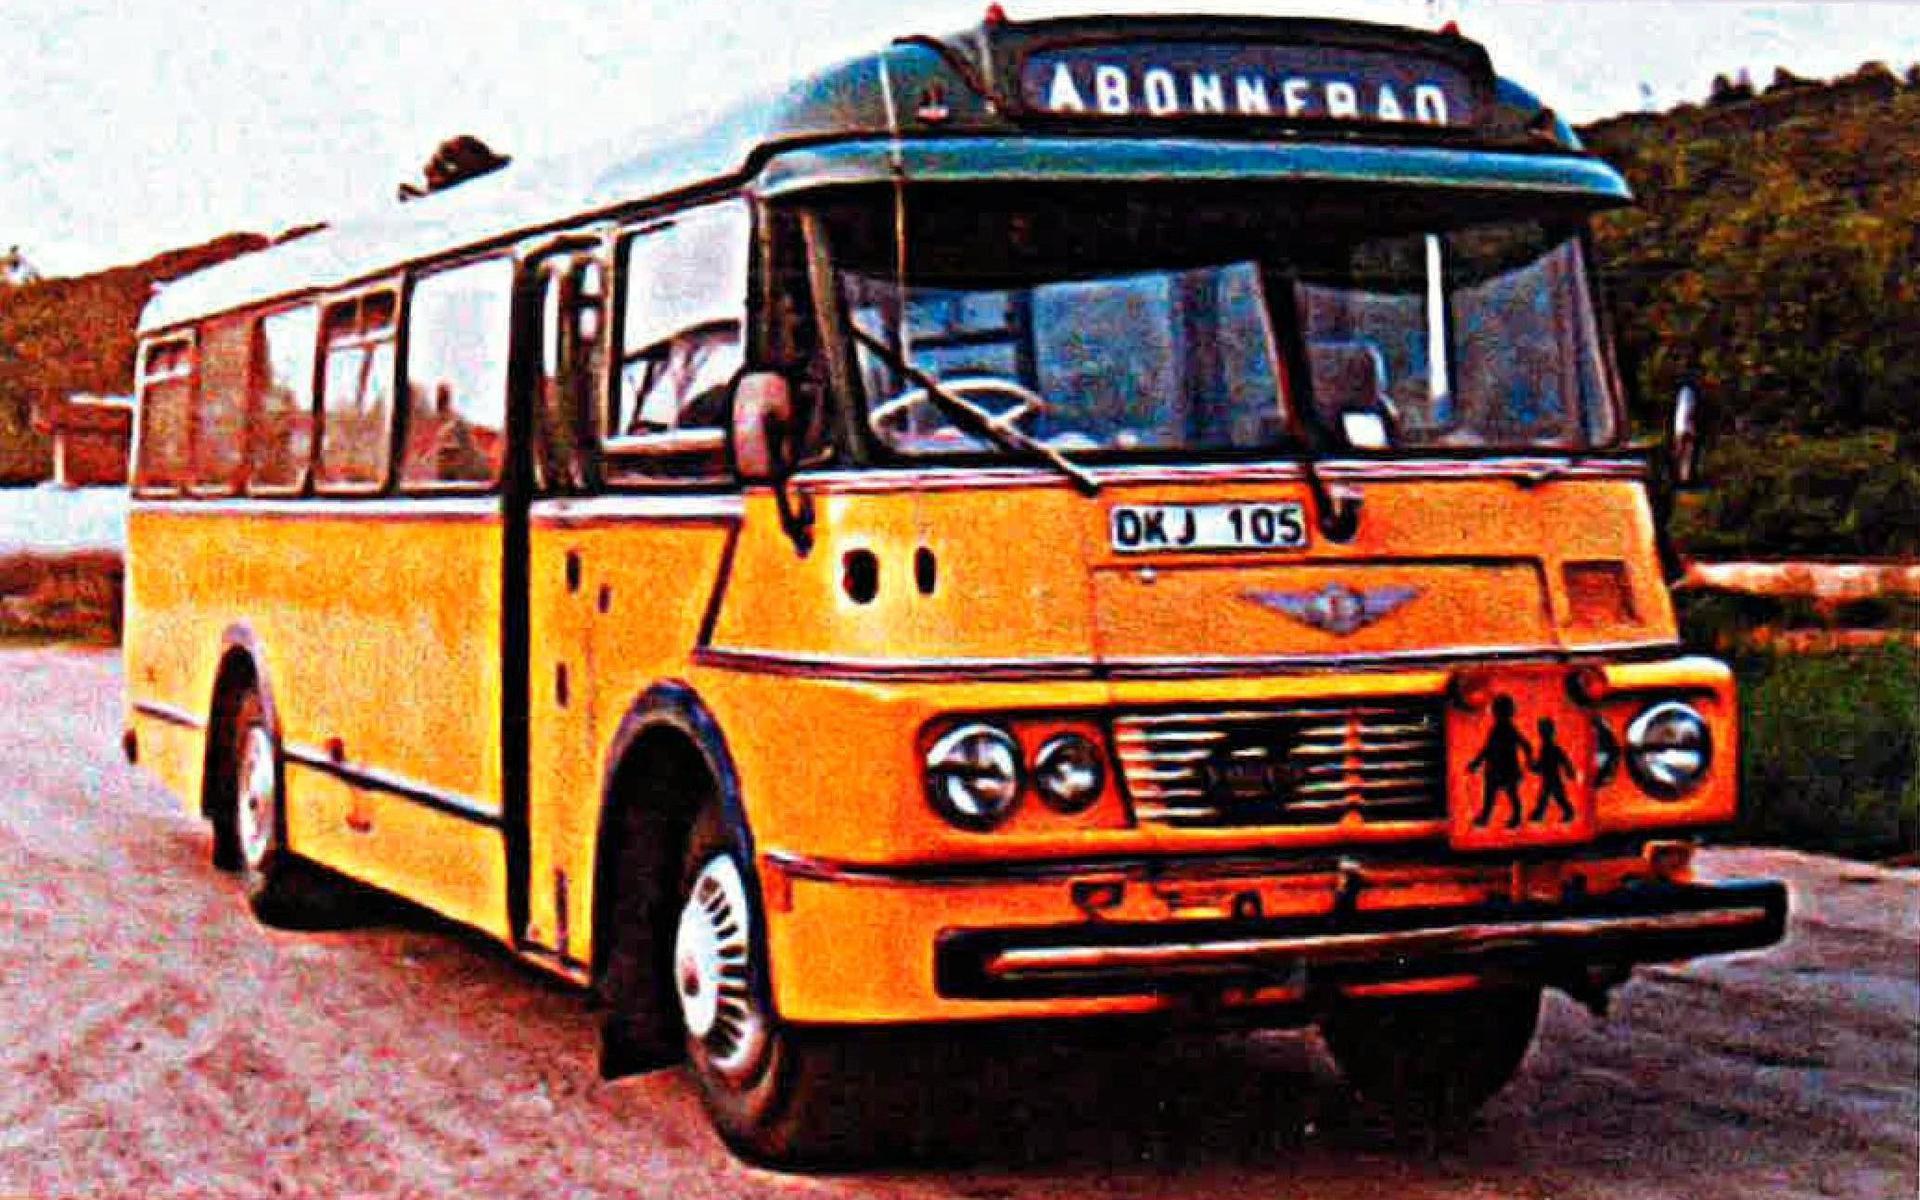 Den sista bussen, DKJ 105, köptes in 1963 och utrustades med två framdörrar, en på vardera sida, för att underlätta körningar till Norge och Danmark där man hade högertrafik medan man i Sverige fortfarande hade vänstertrafik. 